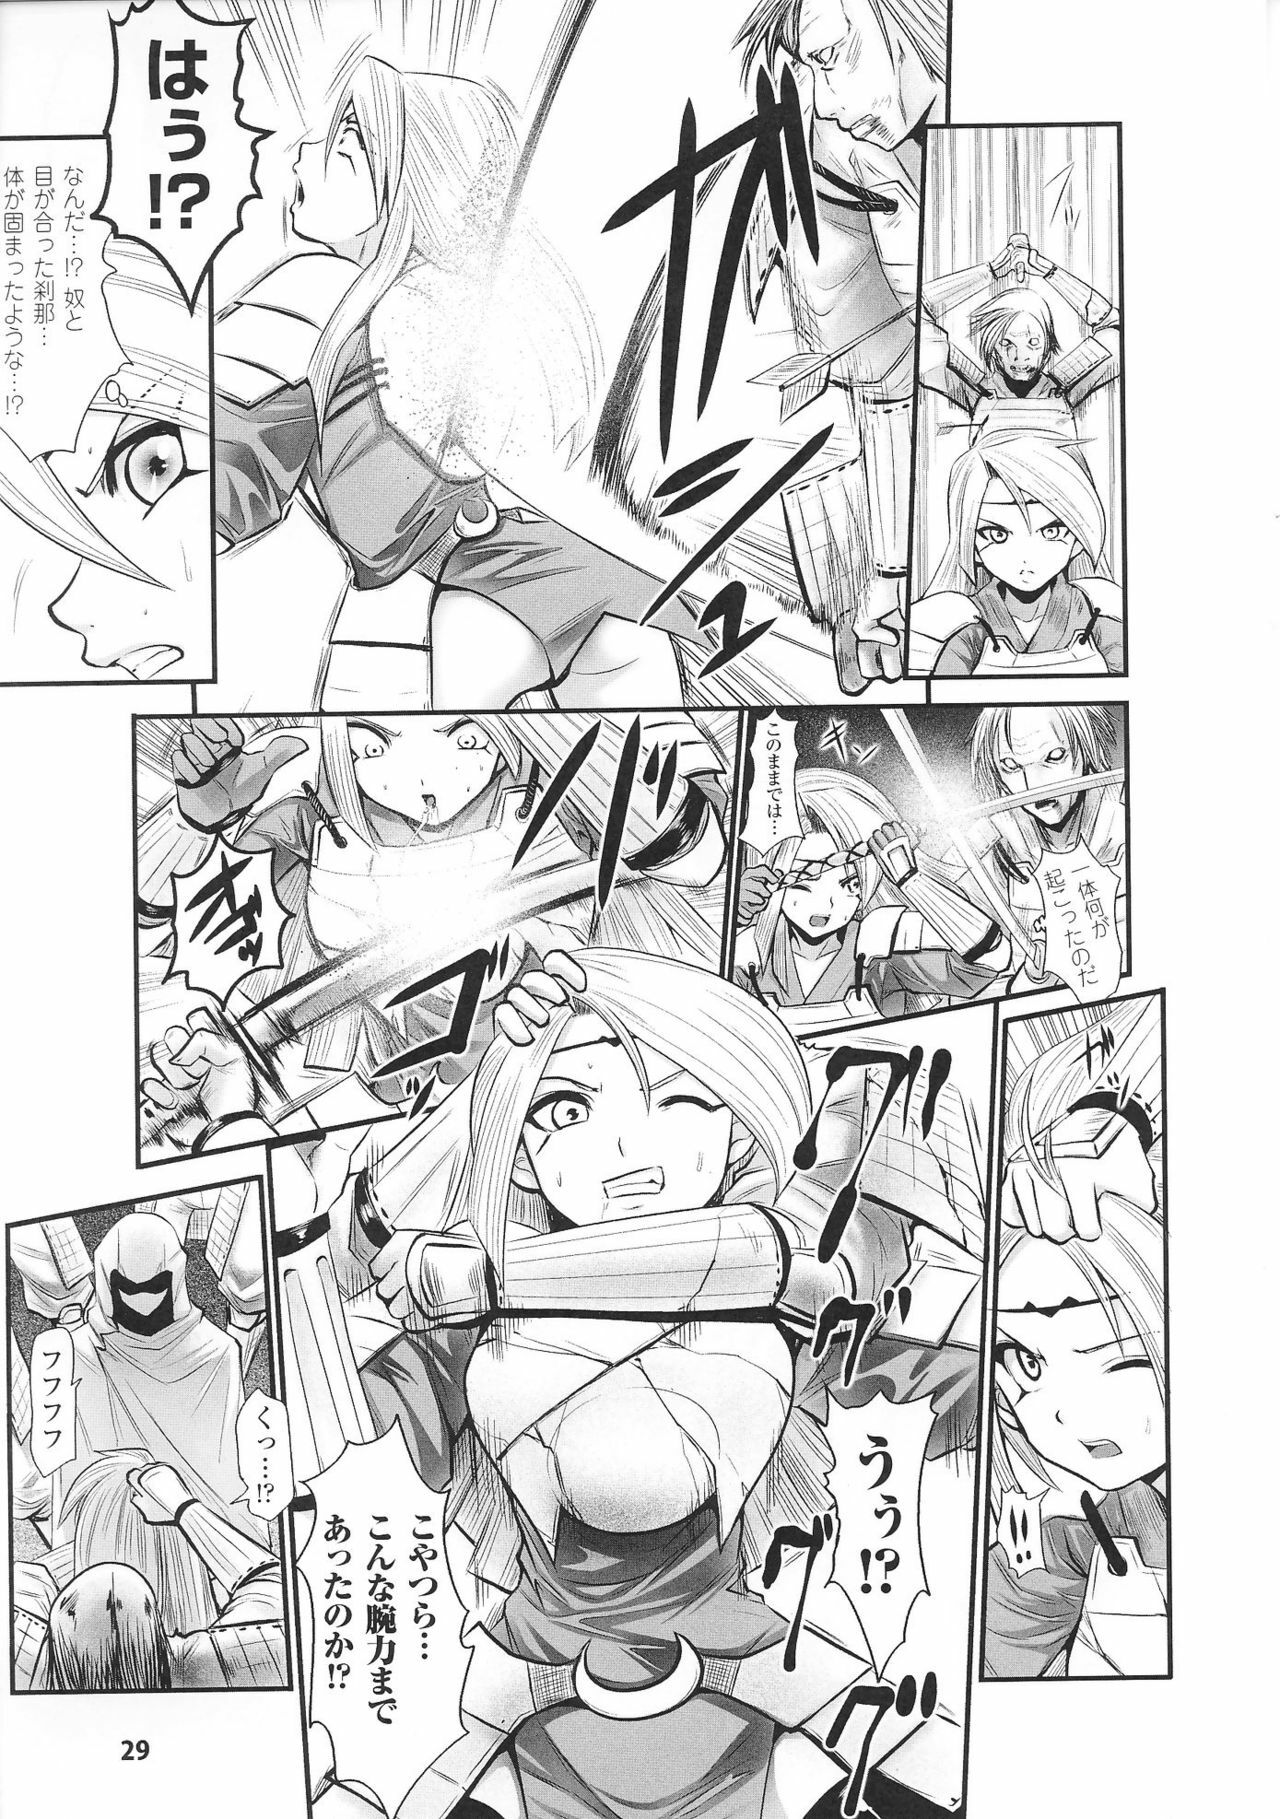 [Anthology] Hime Musha Anthology Comics | Princess Warrior Anthology Comics page 31 full